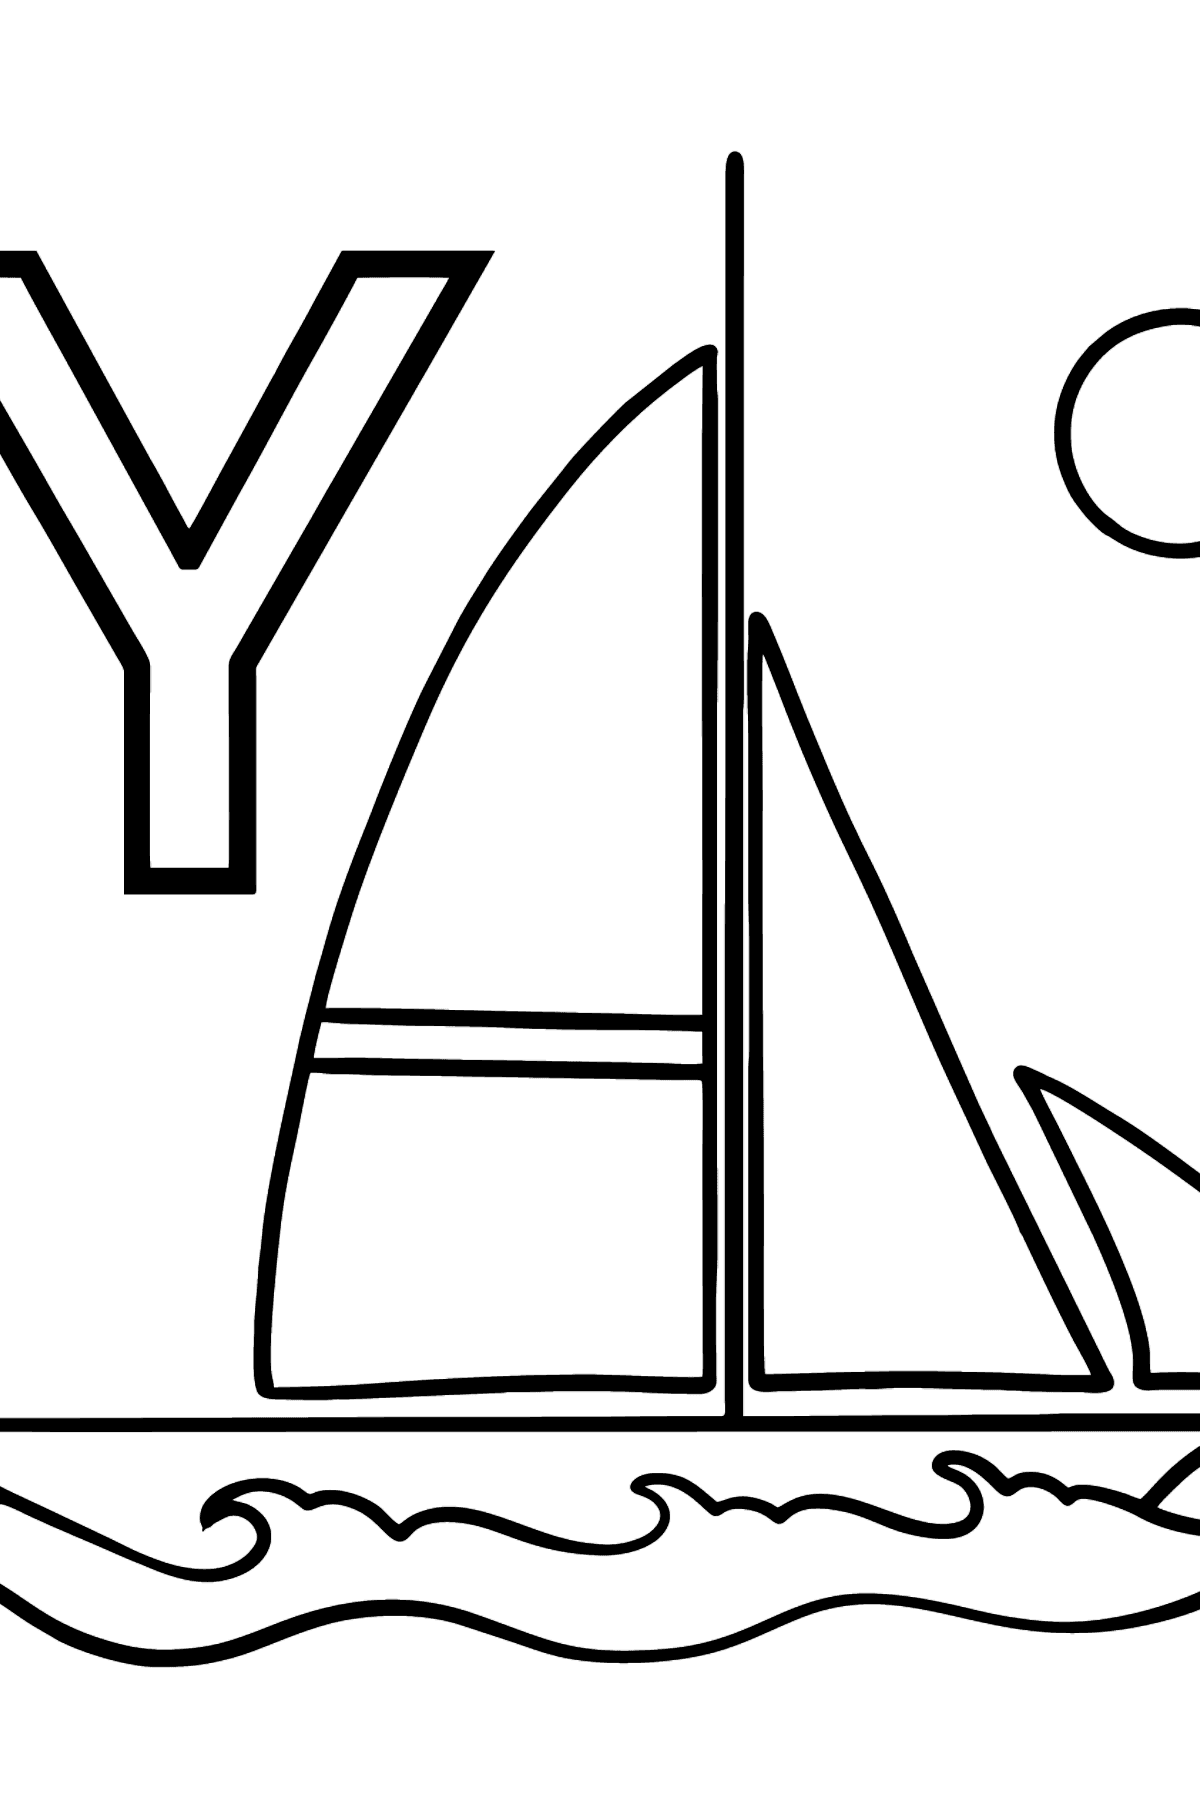 Раскраска Буква Y Английский алфавит - YACHT - Картинки для Детей